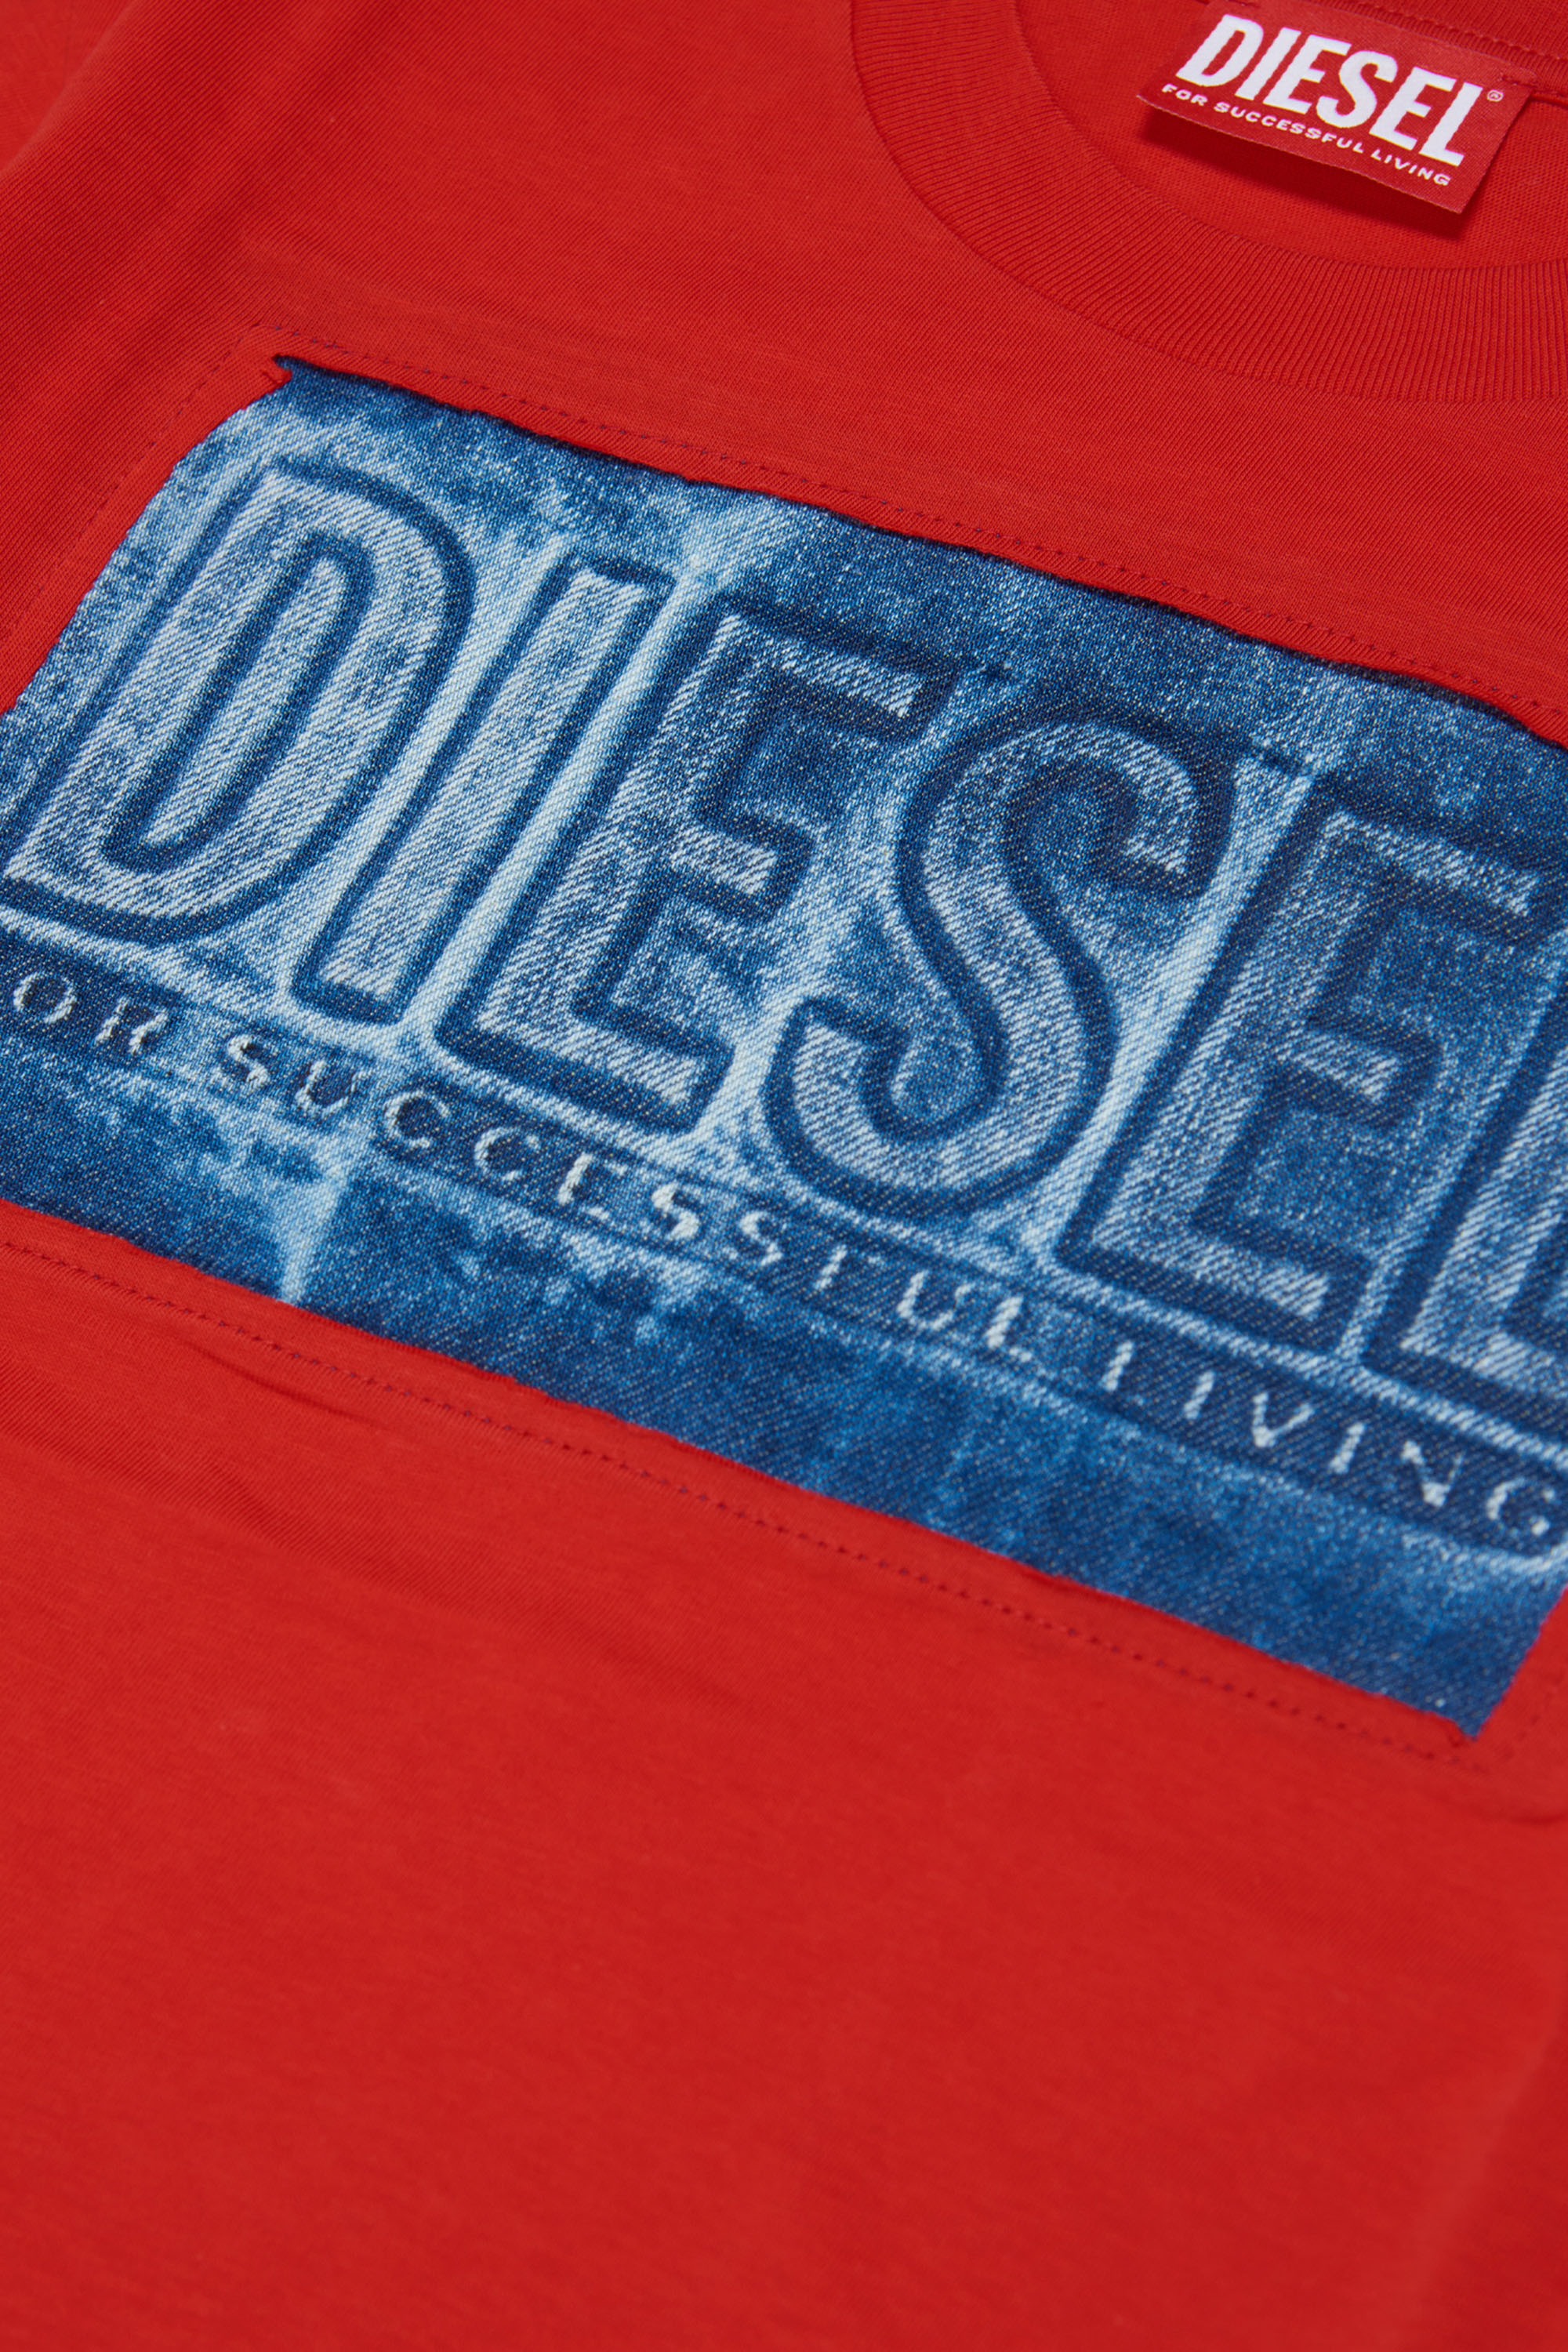 Diesel - TWANNY OVER, Red - Image 3